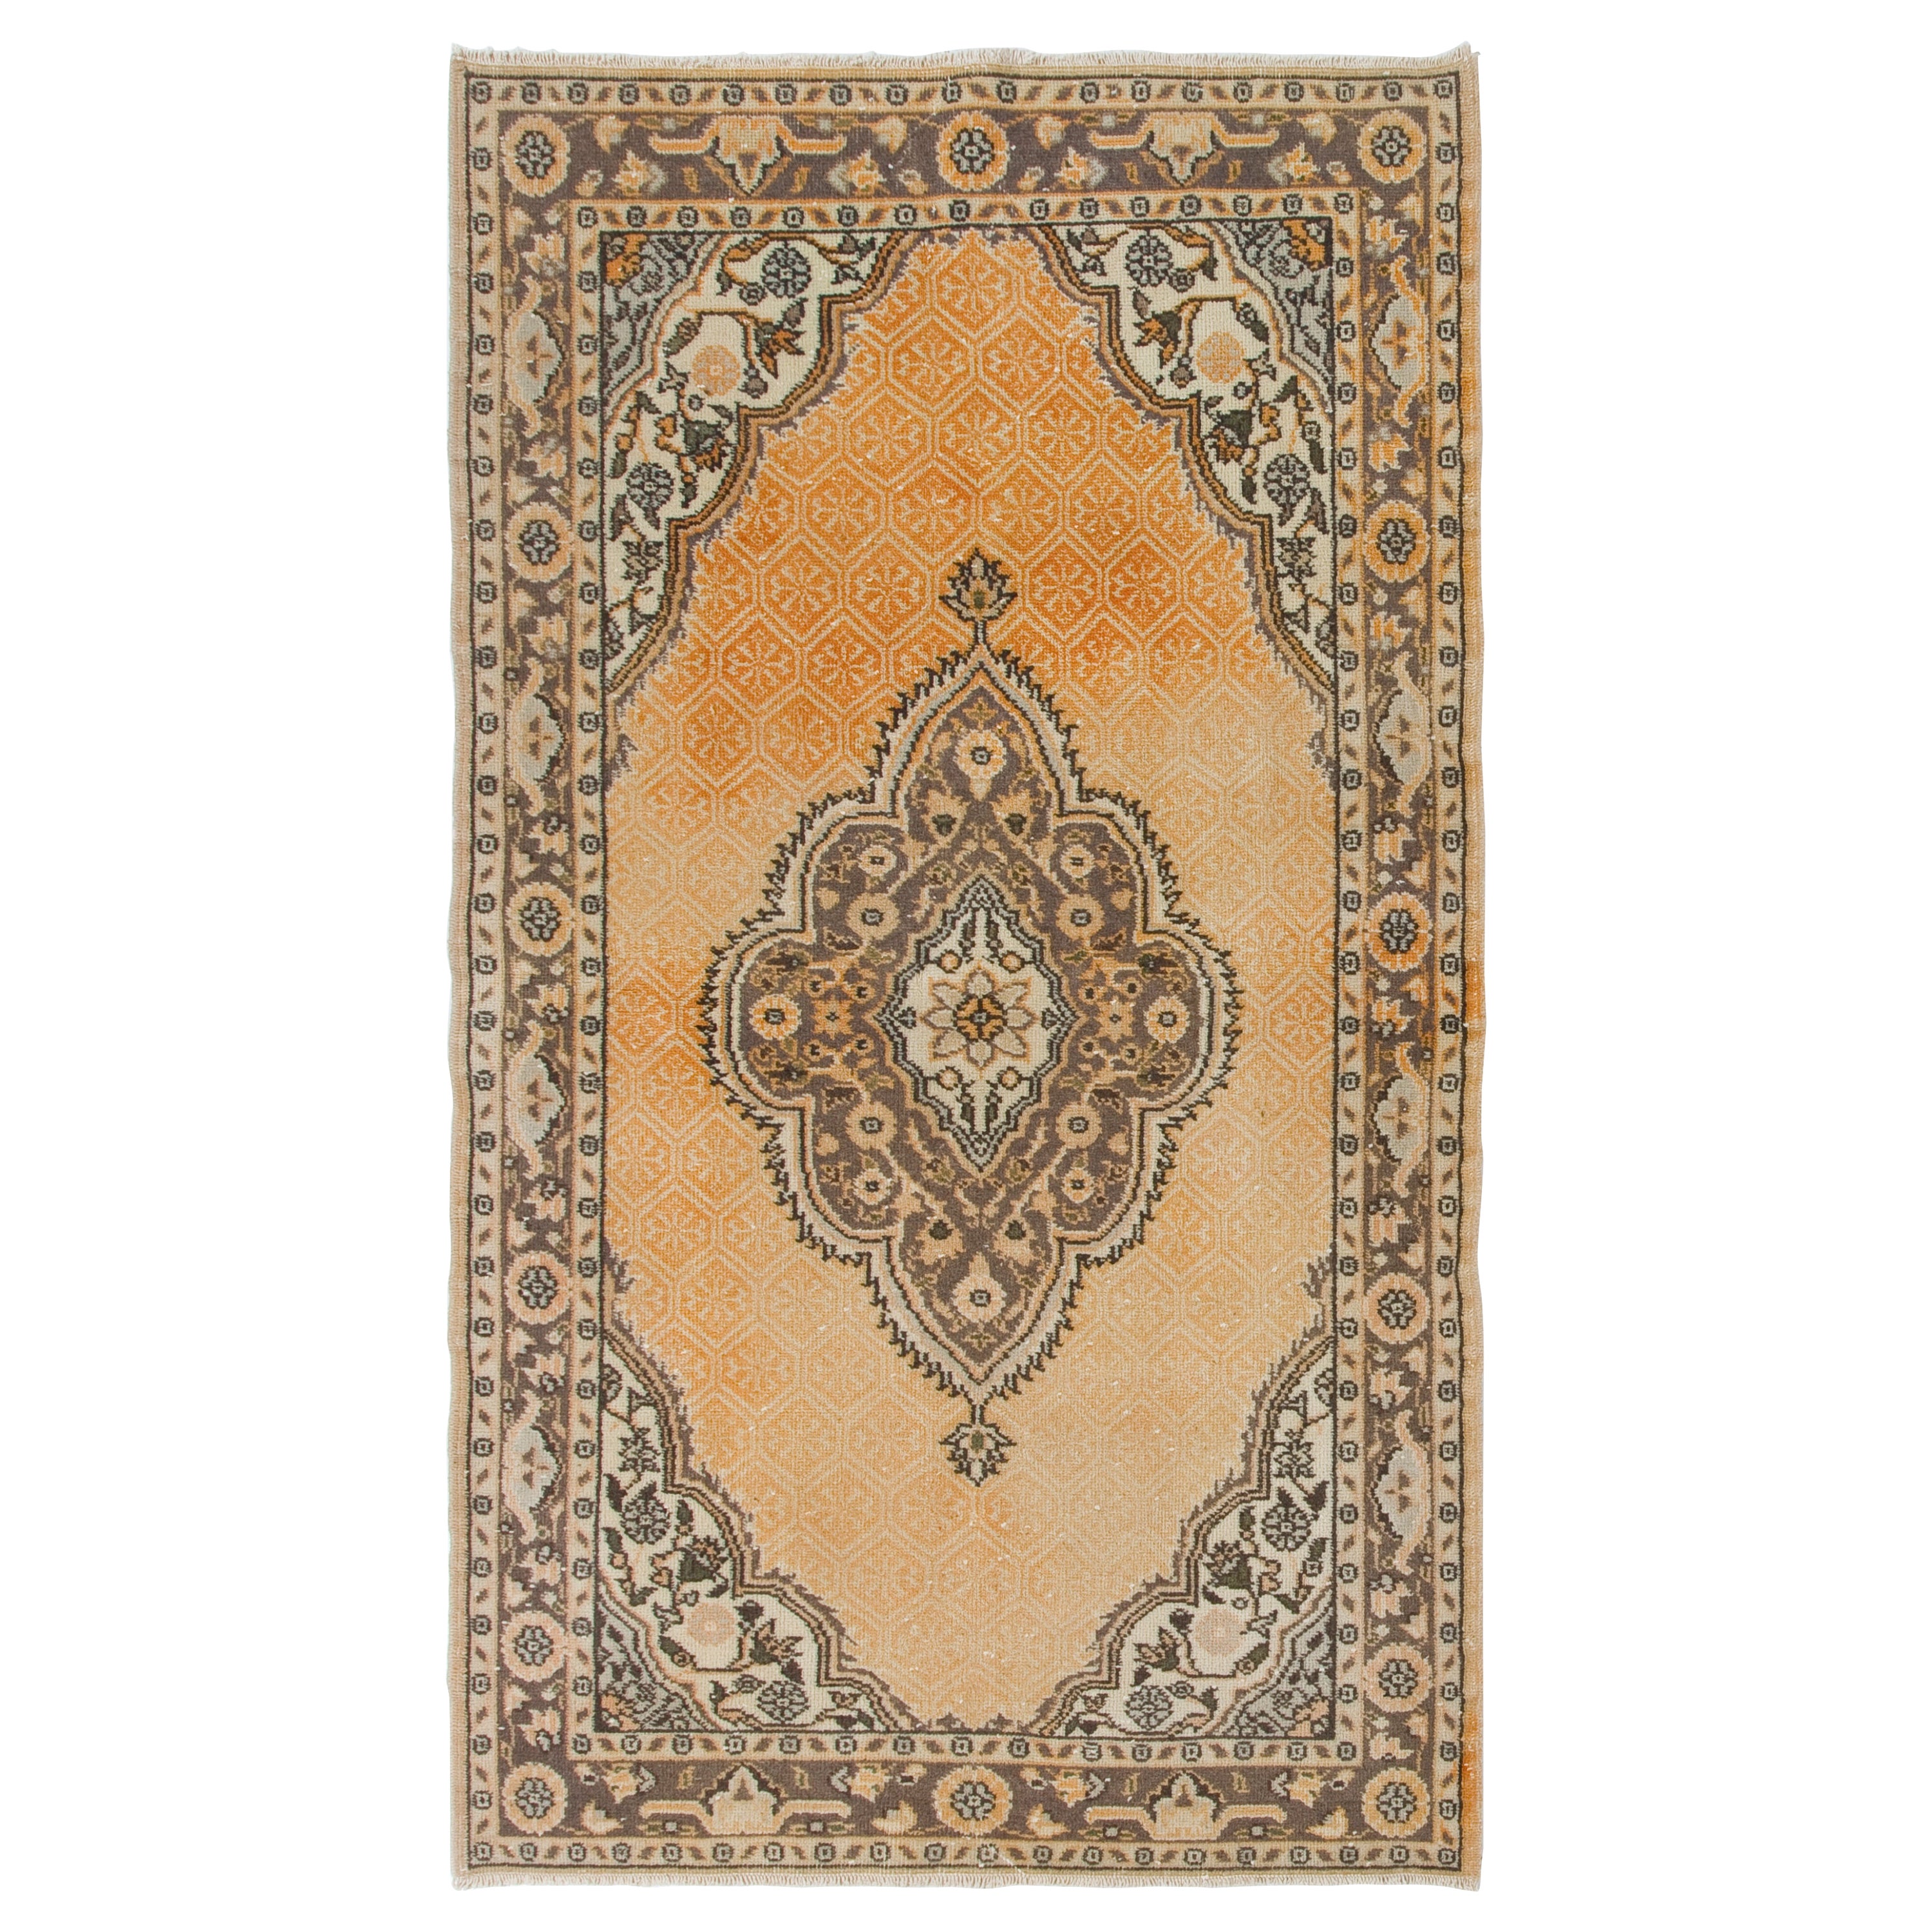 4x7 Ft Vintage Handgefertigter türkischer Akzent-Teppich mit geometrischem Medaillon-Design